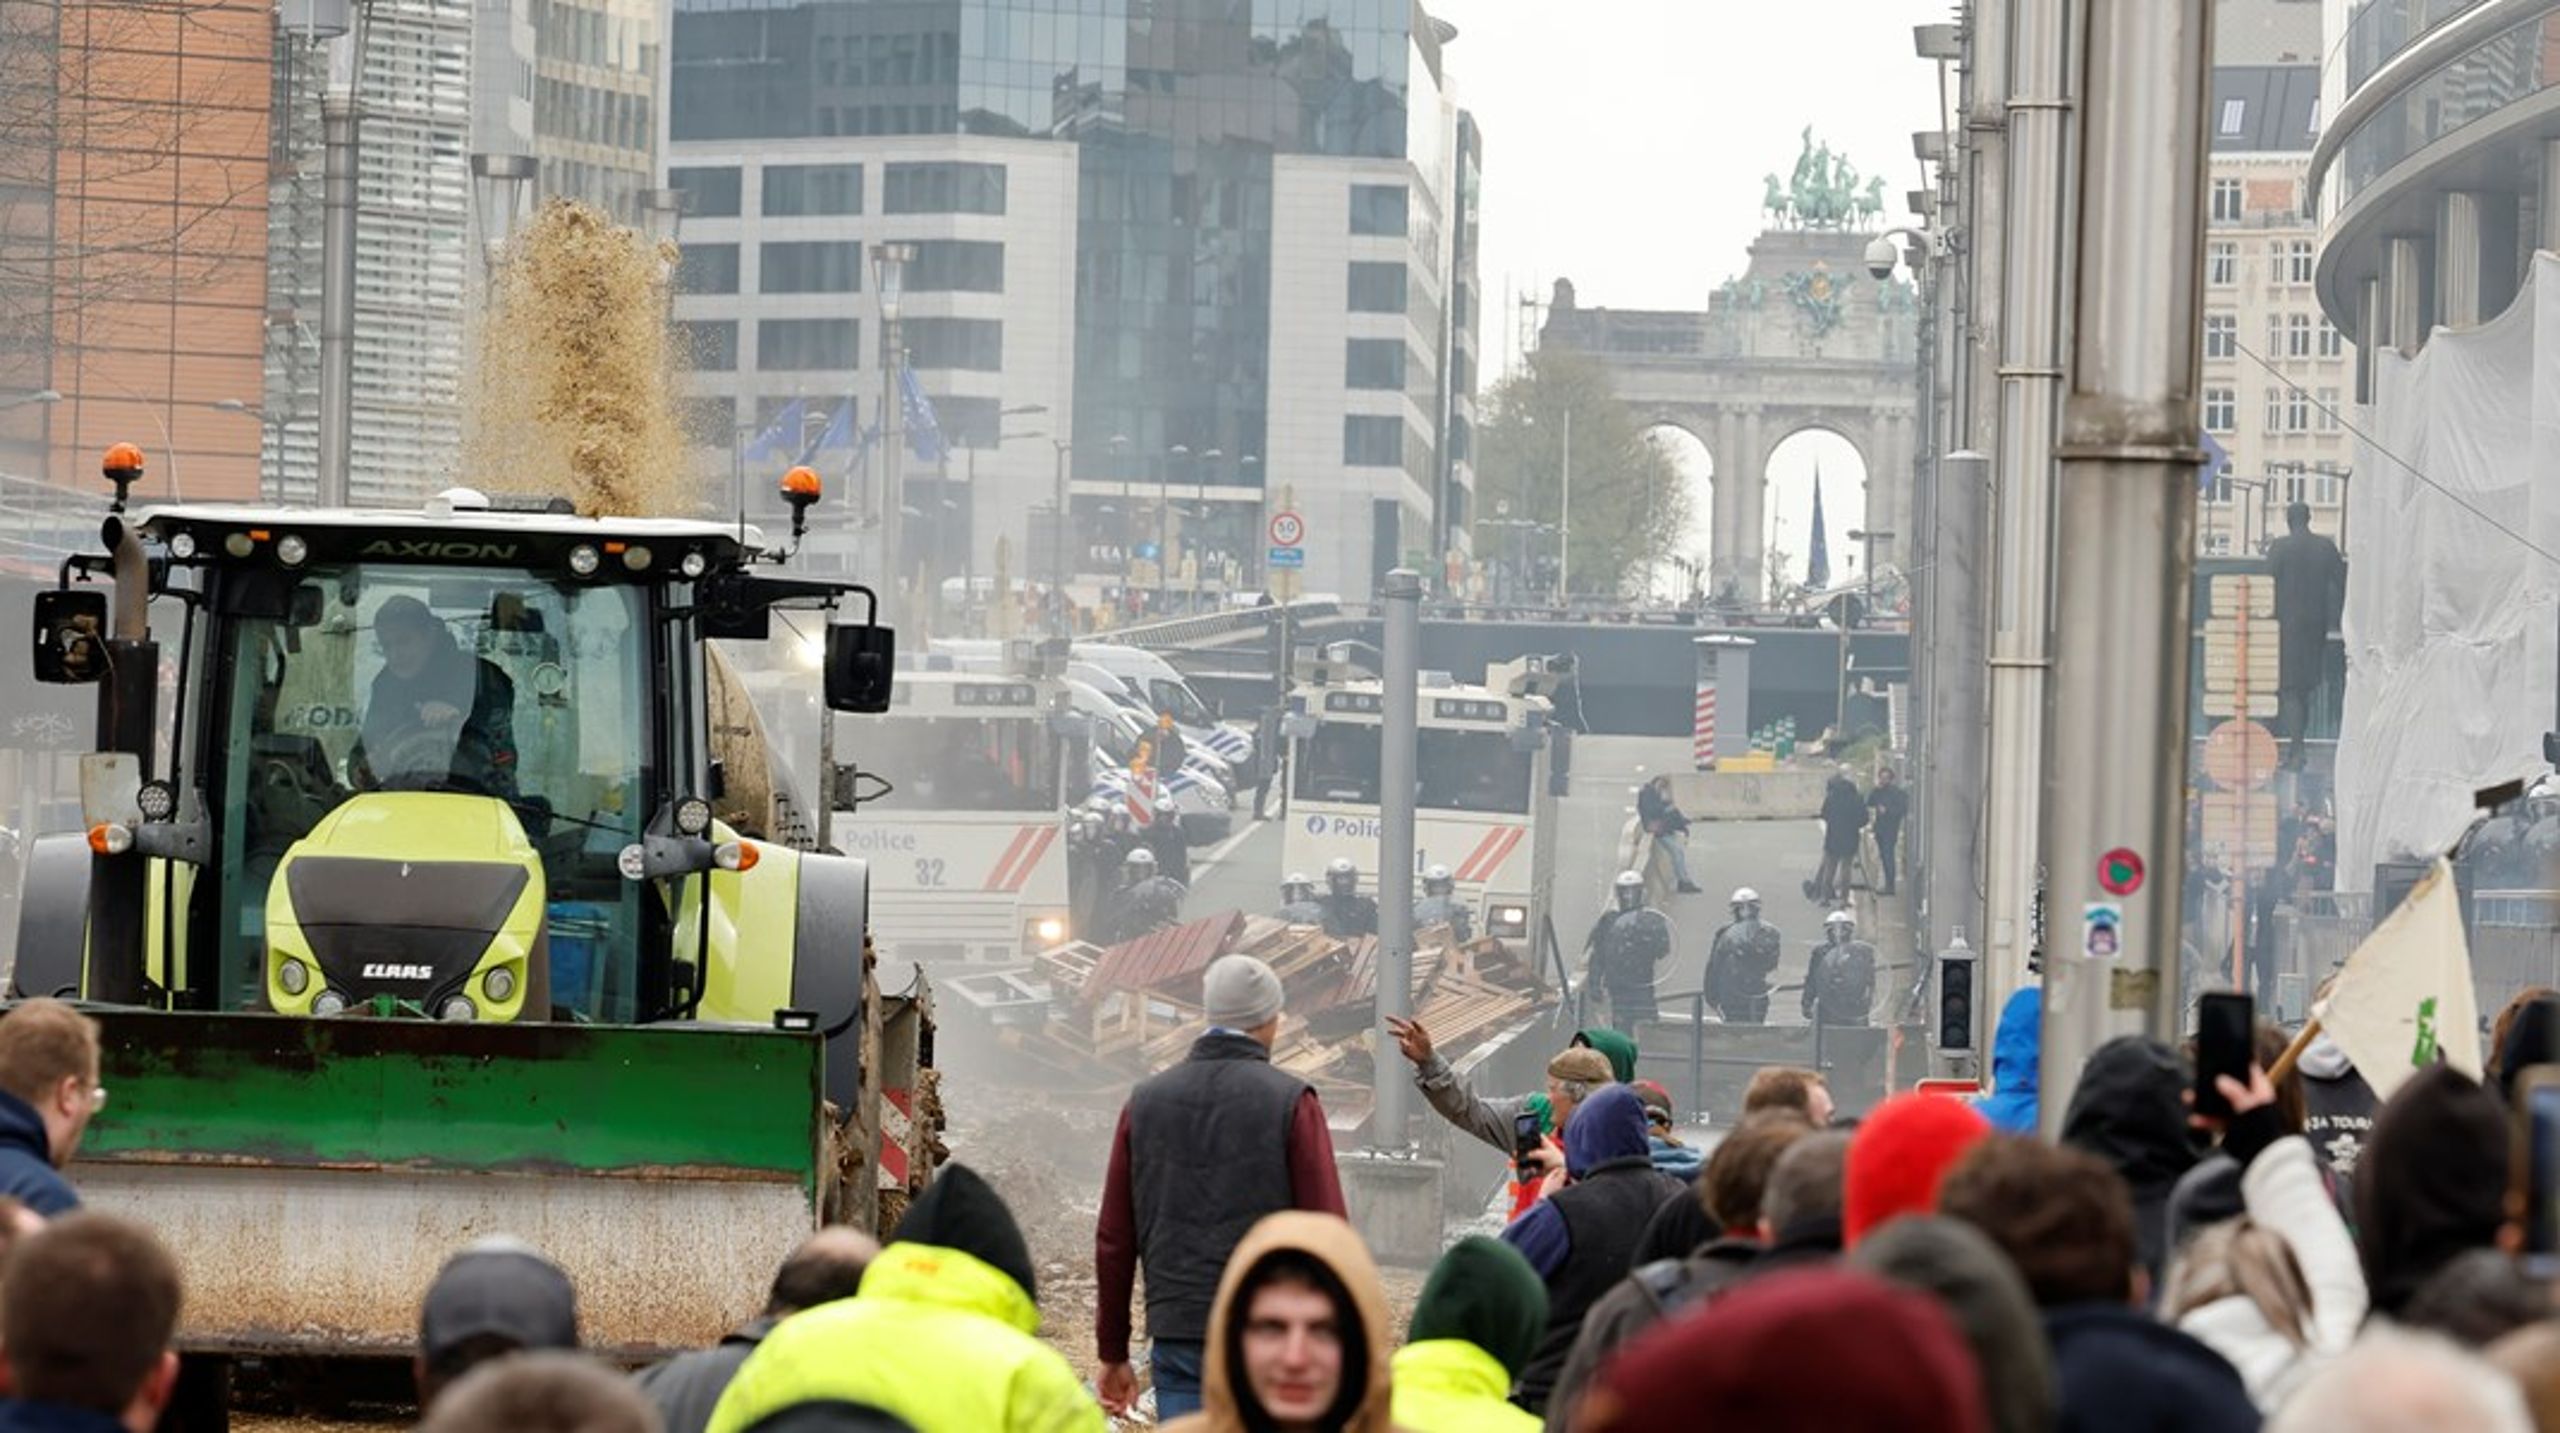 Traktorerne er rykket helt ind i EU's magtcentrum i Bruxelles. Landmændene er blandt andet bekymrede over høje brændstofpriser, faldende landbrugspriser, import af billige landbrugsprodukter fra lande uden for EU og grønne krav.